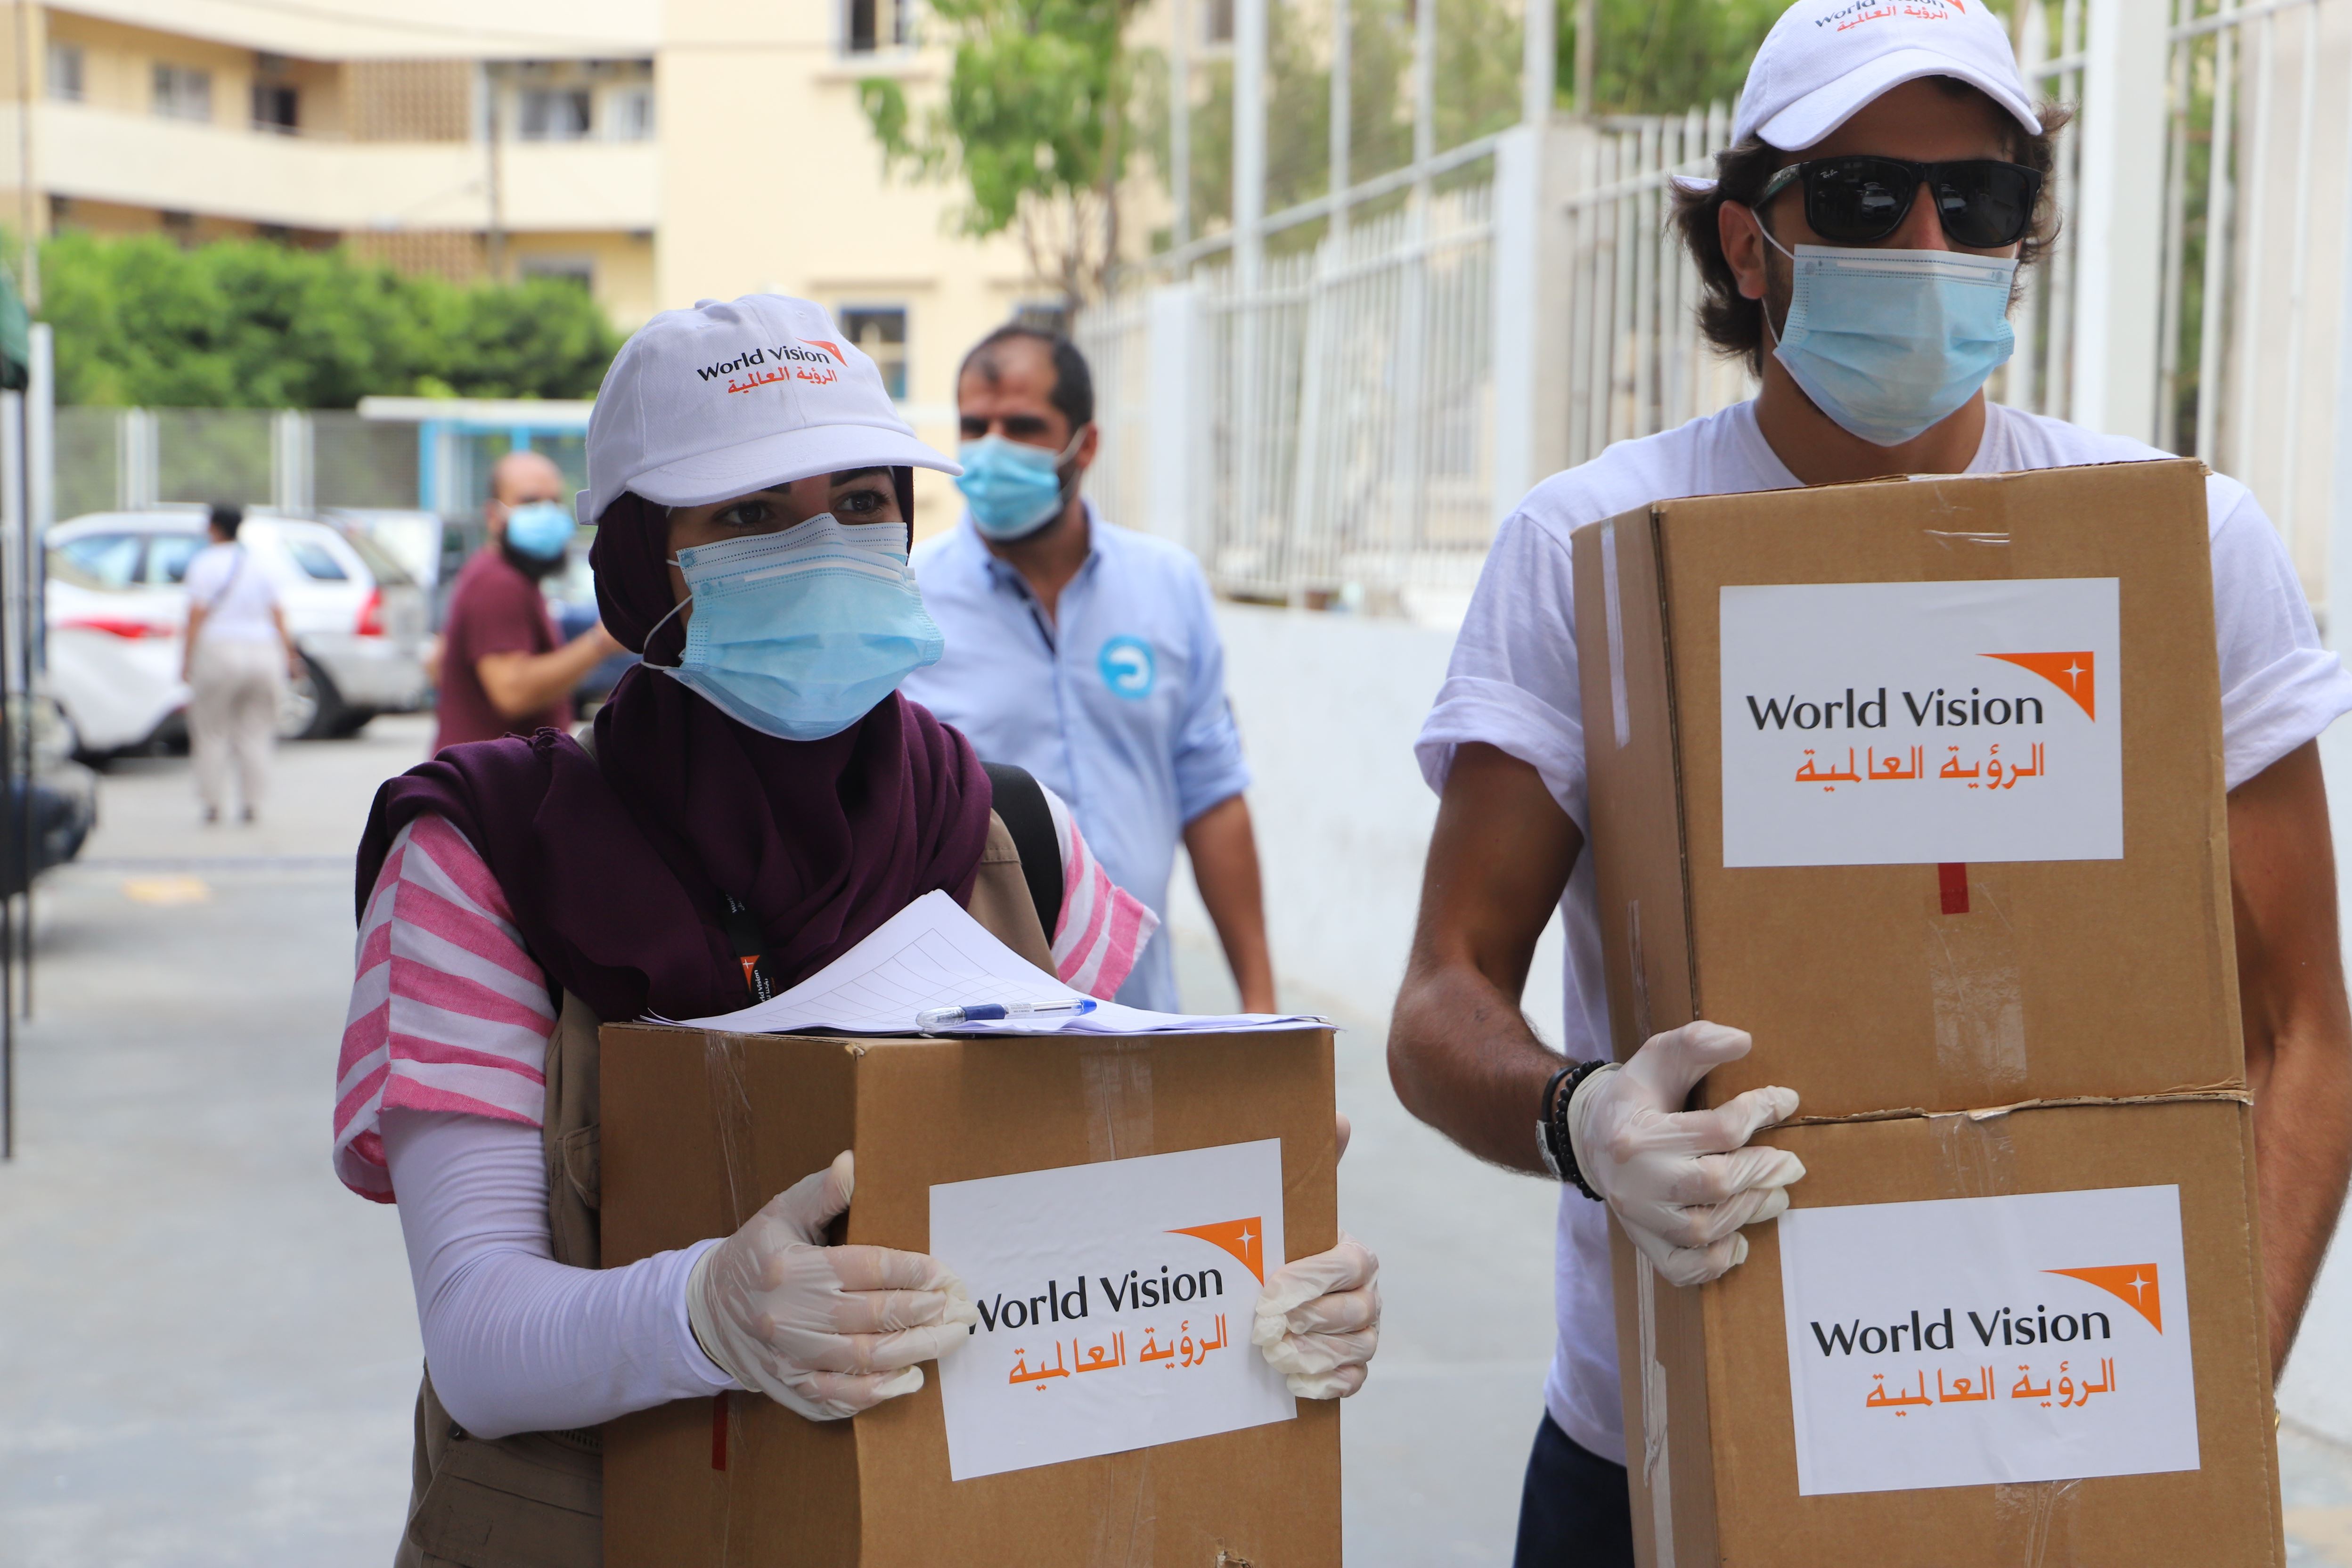 Miembros de World Vision usando mascarillas y guantes llevan cajas para distribuir mini kits de alimentos